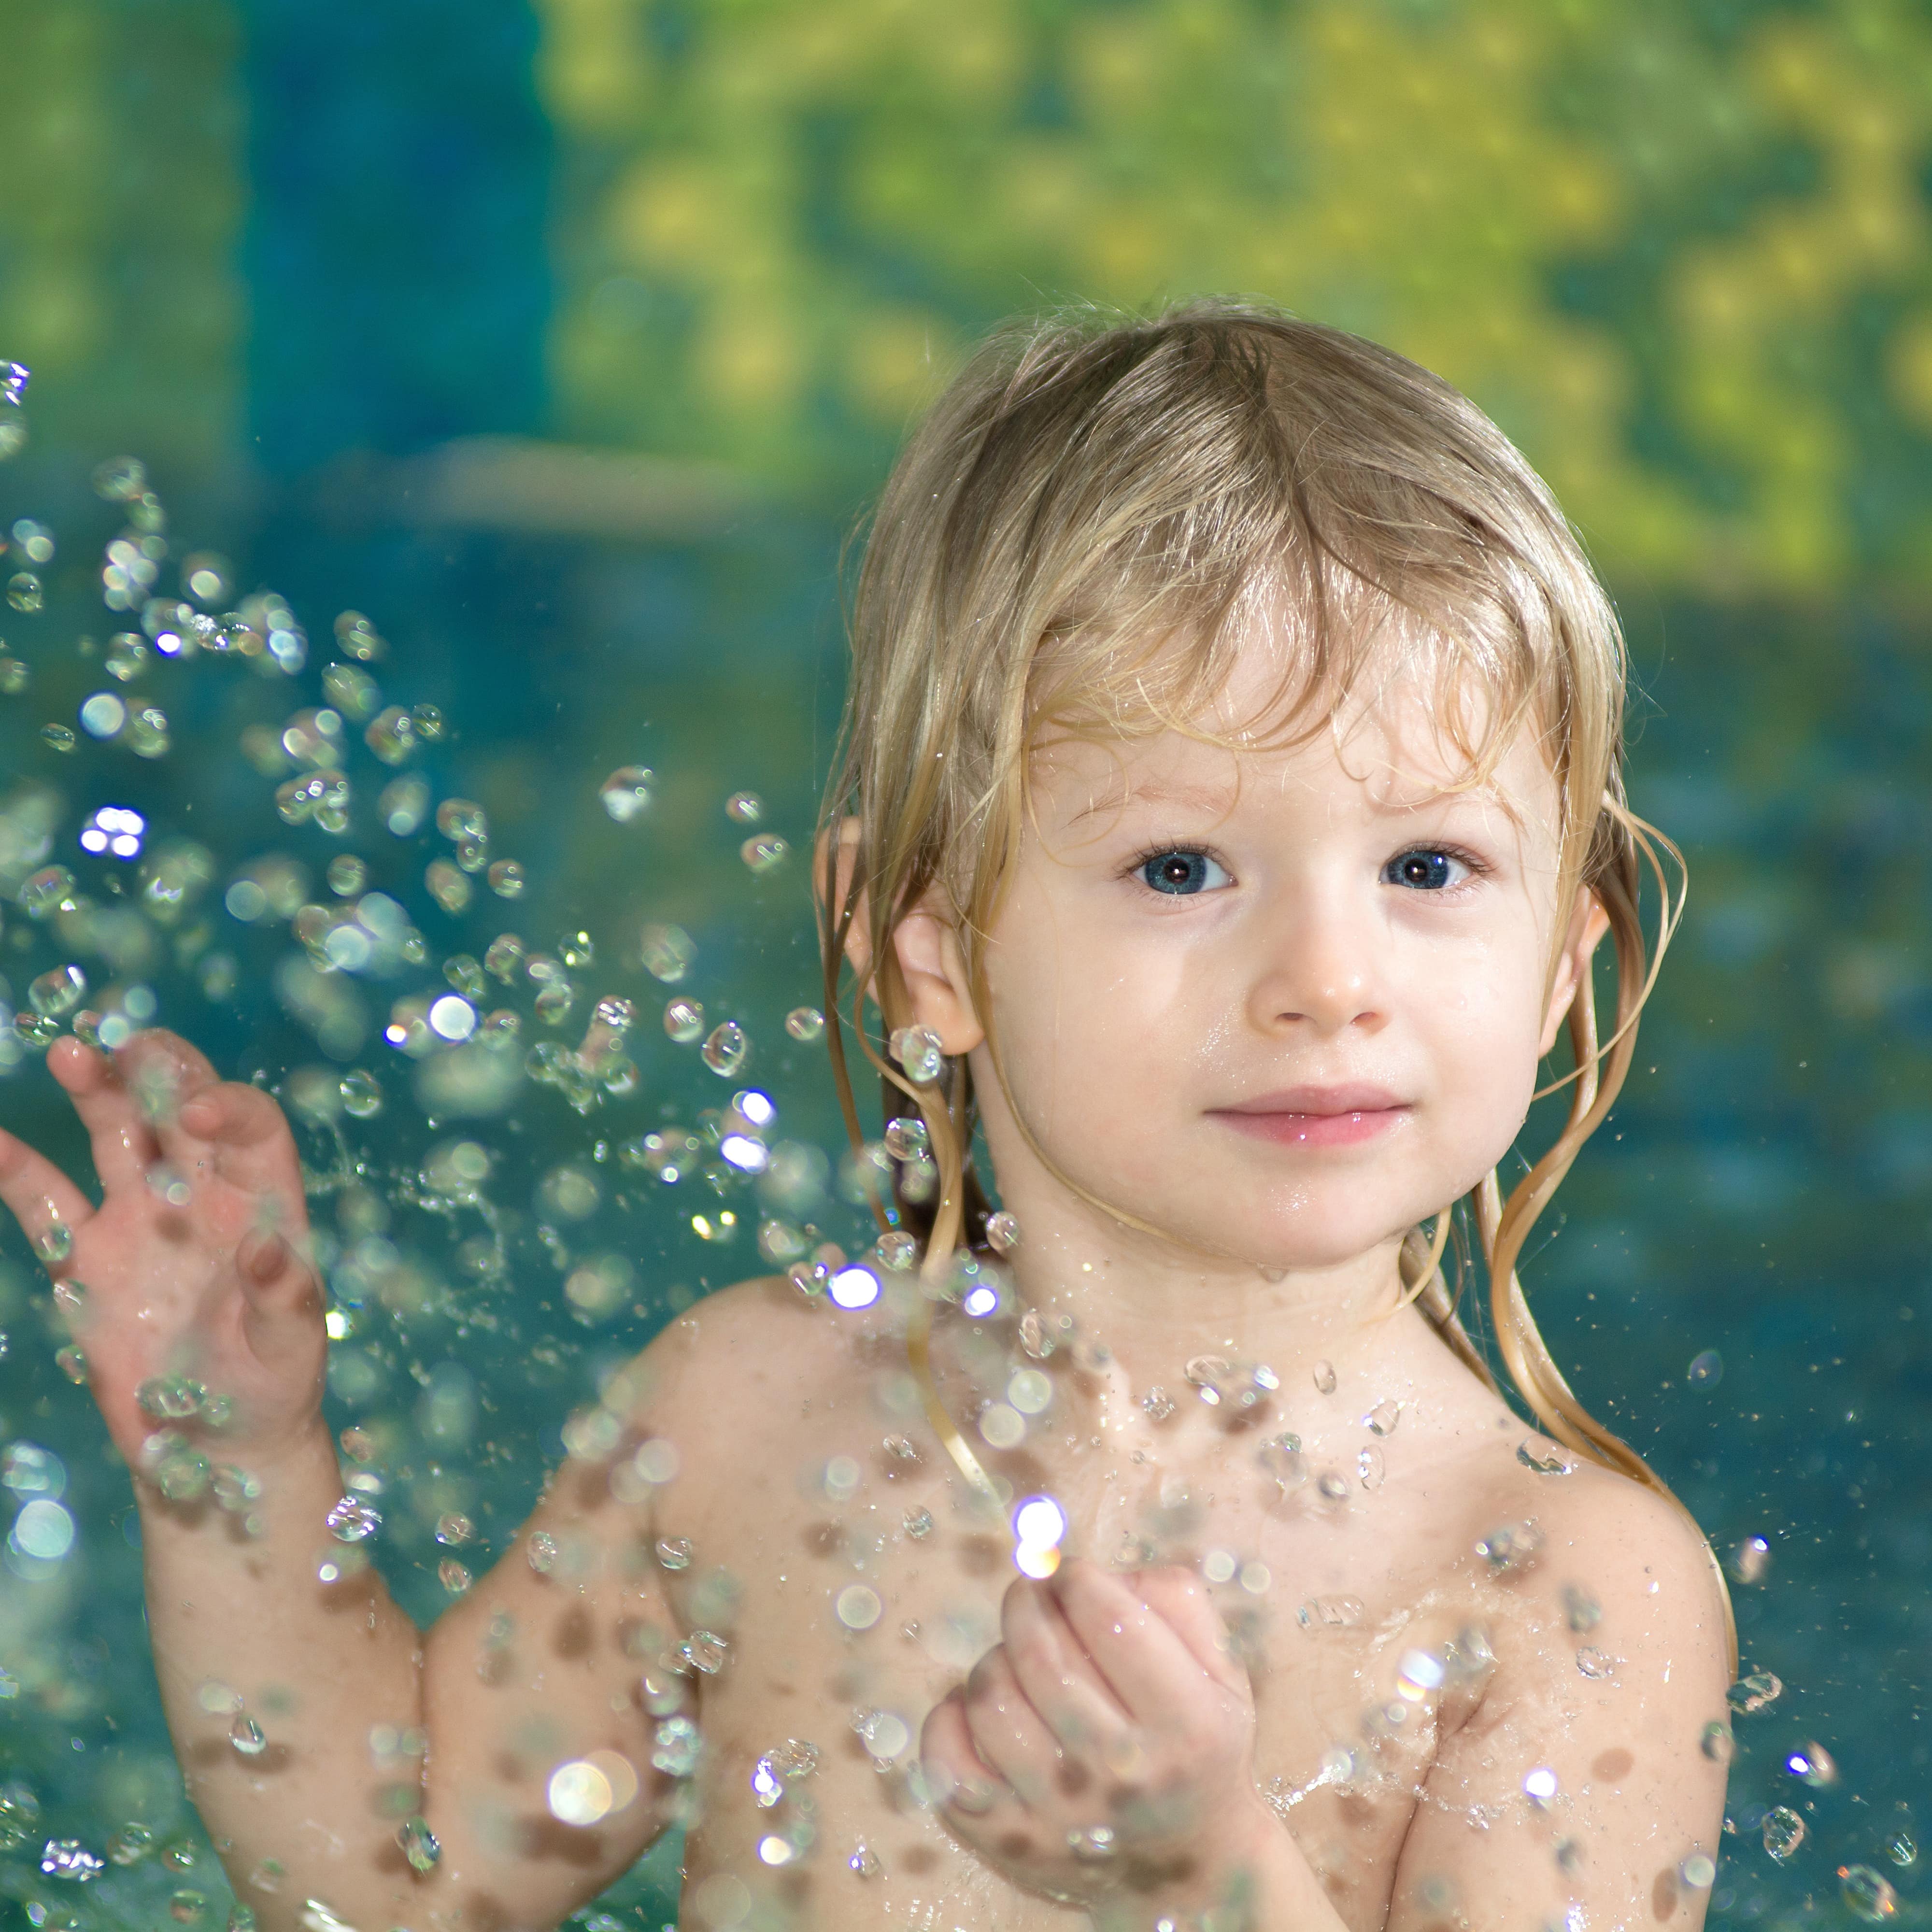 Kleinkind mit langen blonden Haaren im Wasser, davor spritzt glitzerndes Wasser.